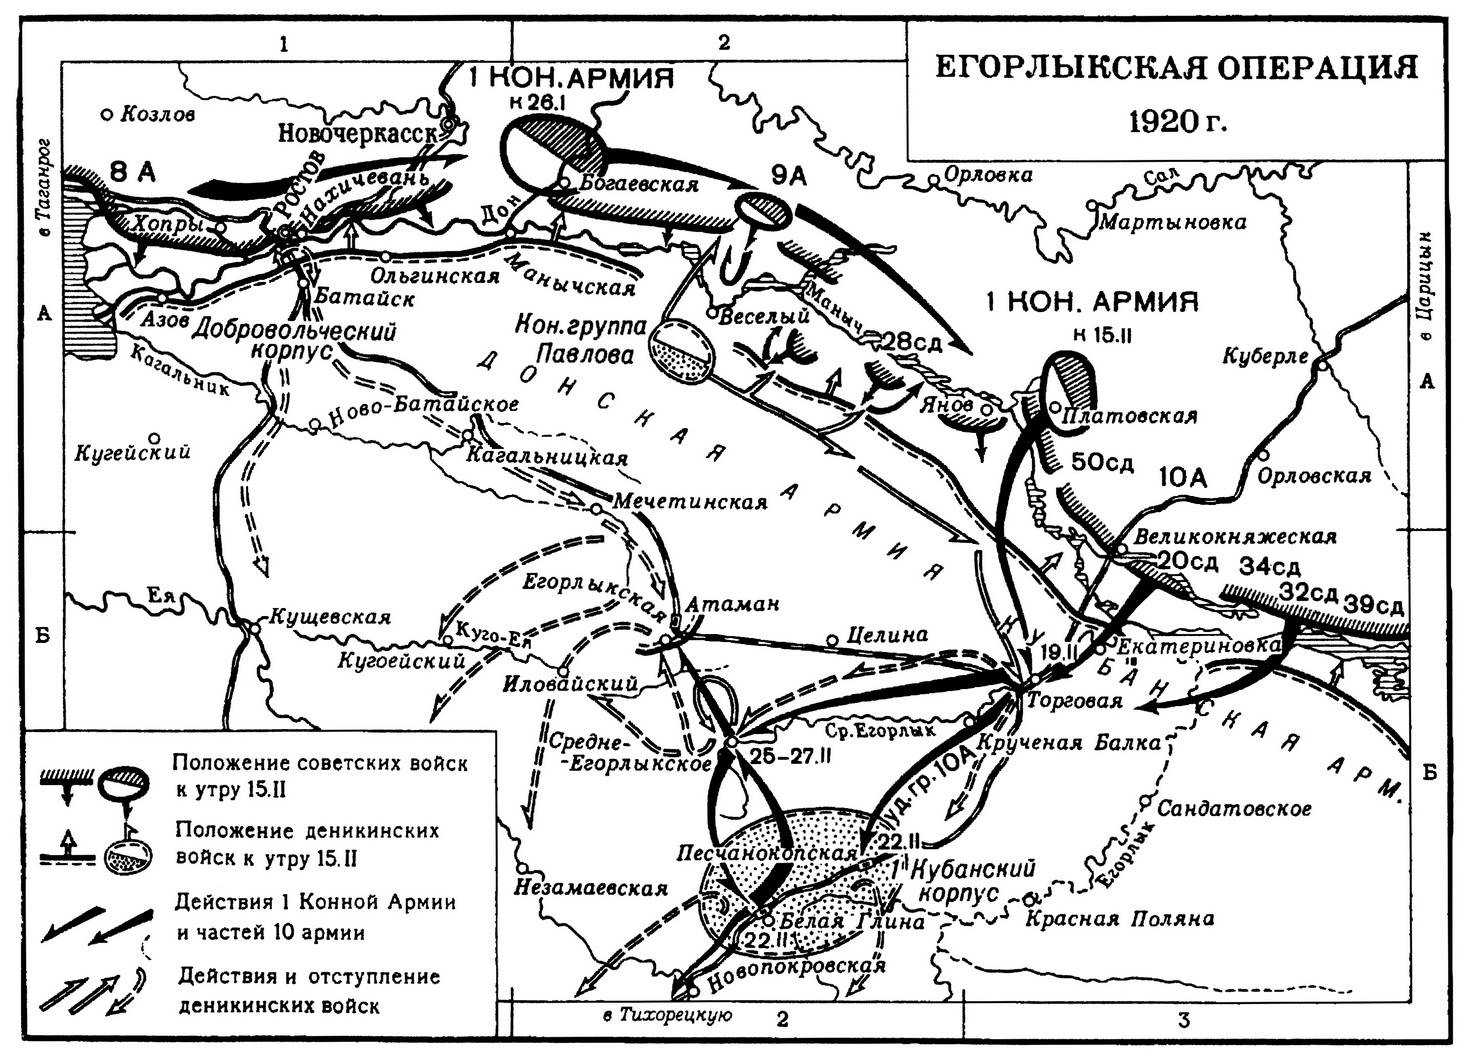 Разгром белых армий. Доно-Манычская операция (1920). Егорлыкское сражение 1920 на карте. Егорлыкская битва гражданской войны.